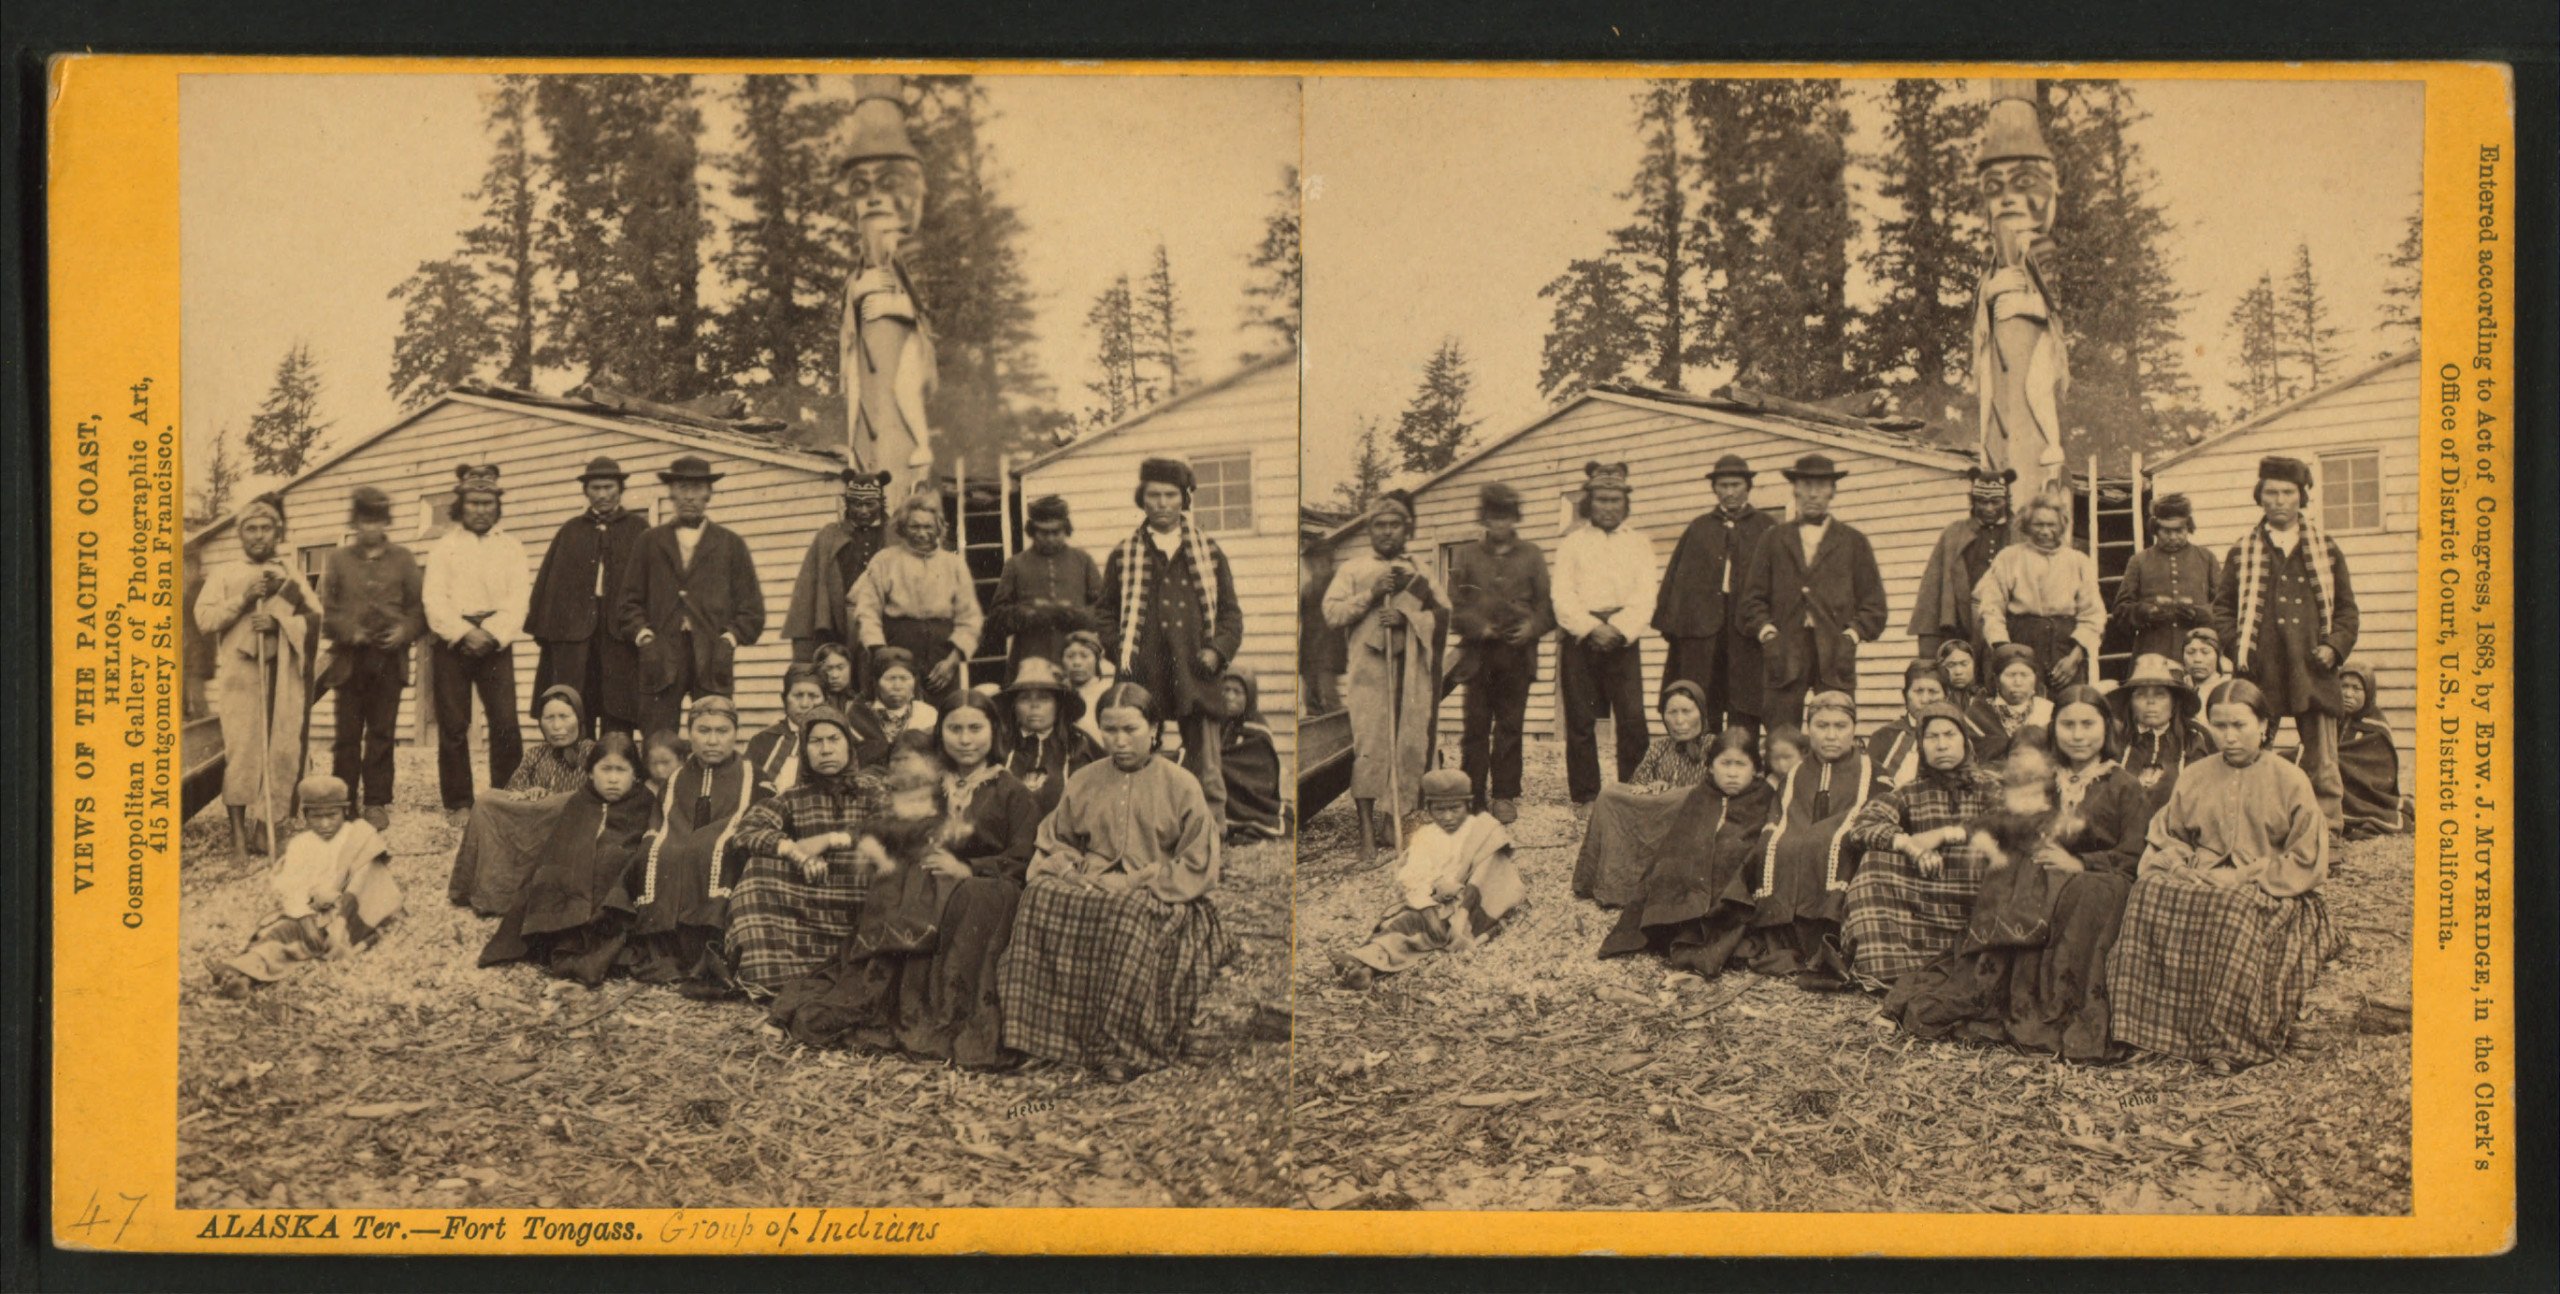 Gruppe af indianere i Alaska 